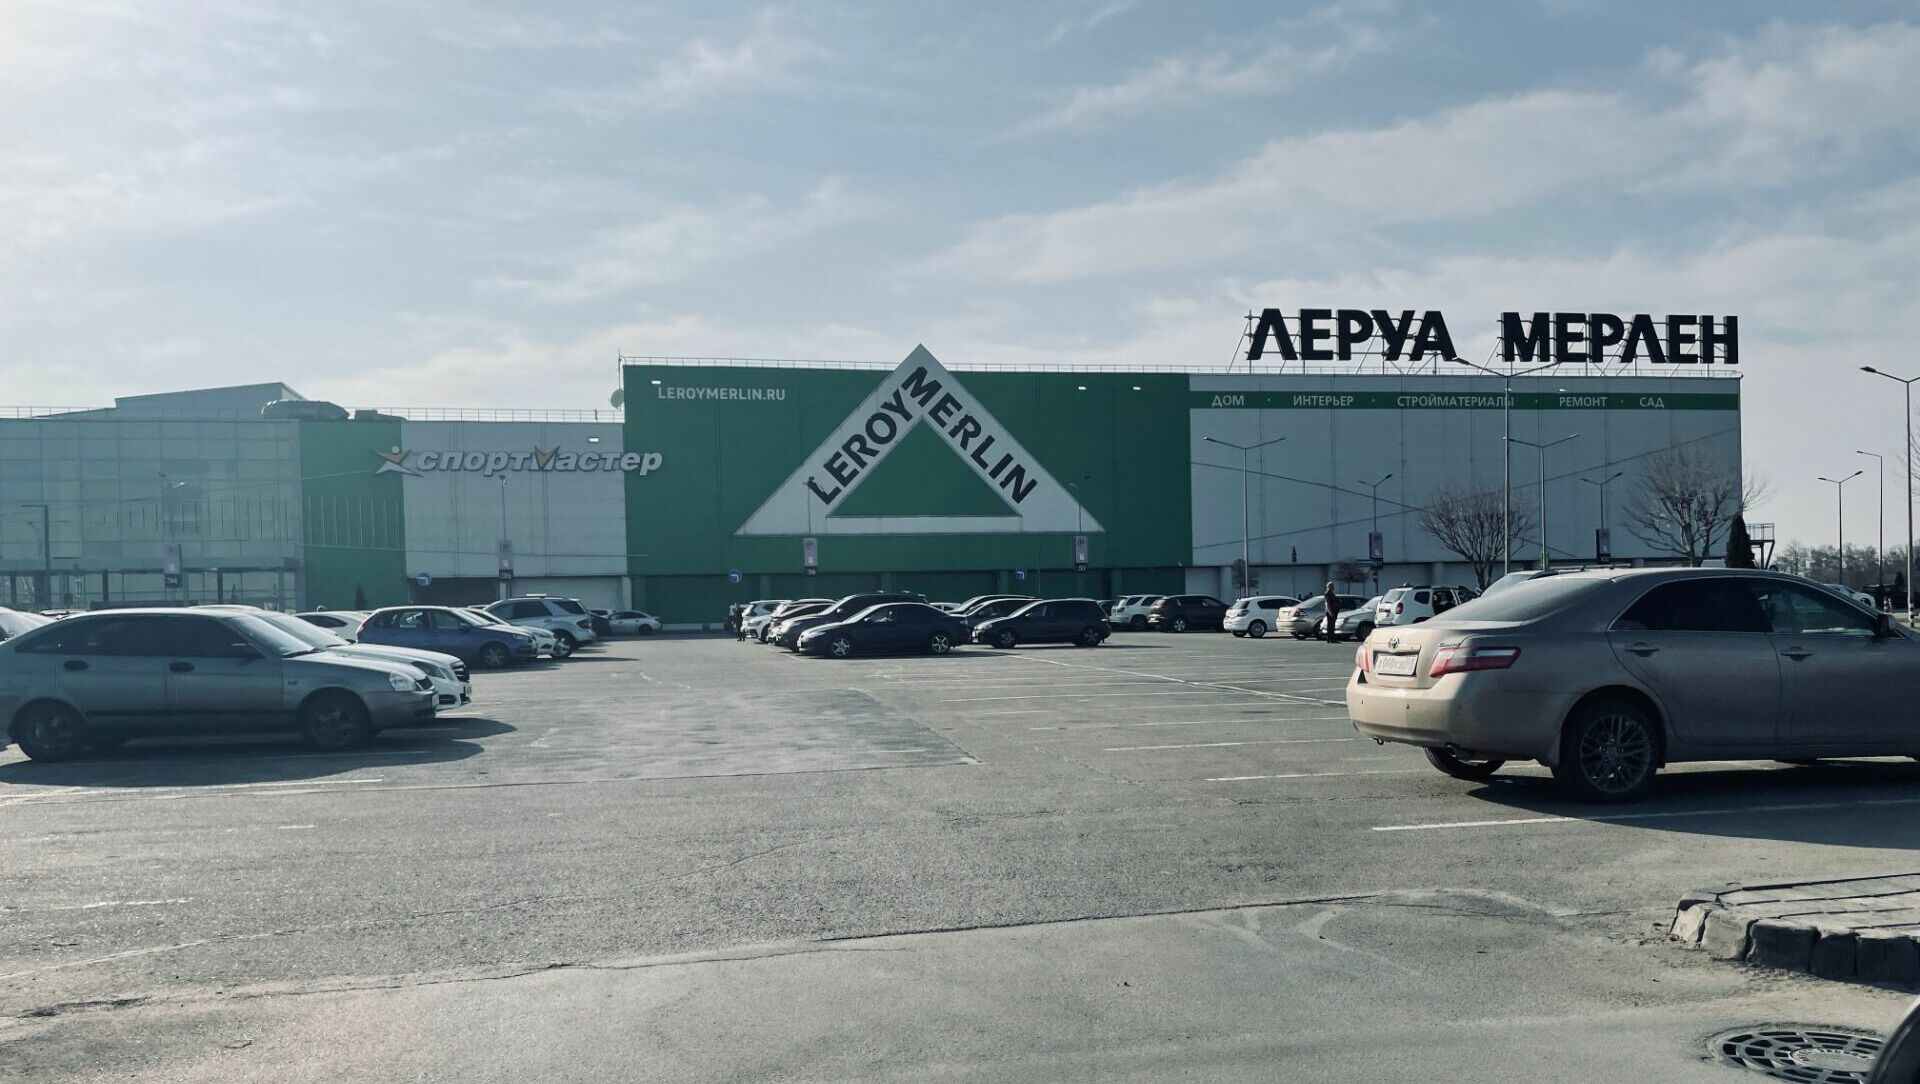 Владелец бренда «Леруа Мерлен» заявил о намерении продать свой магазин в Ростове